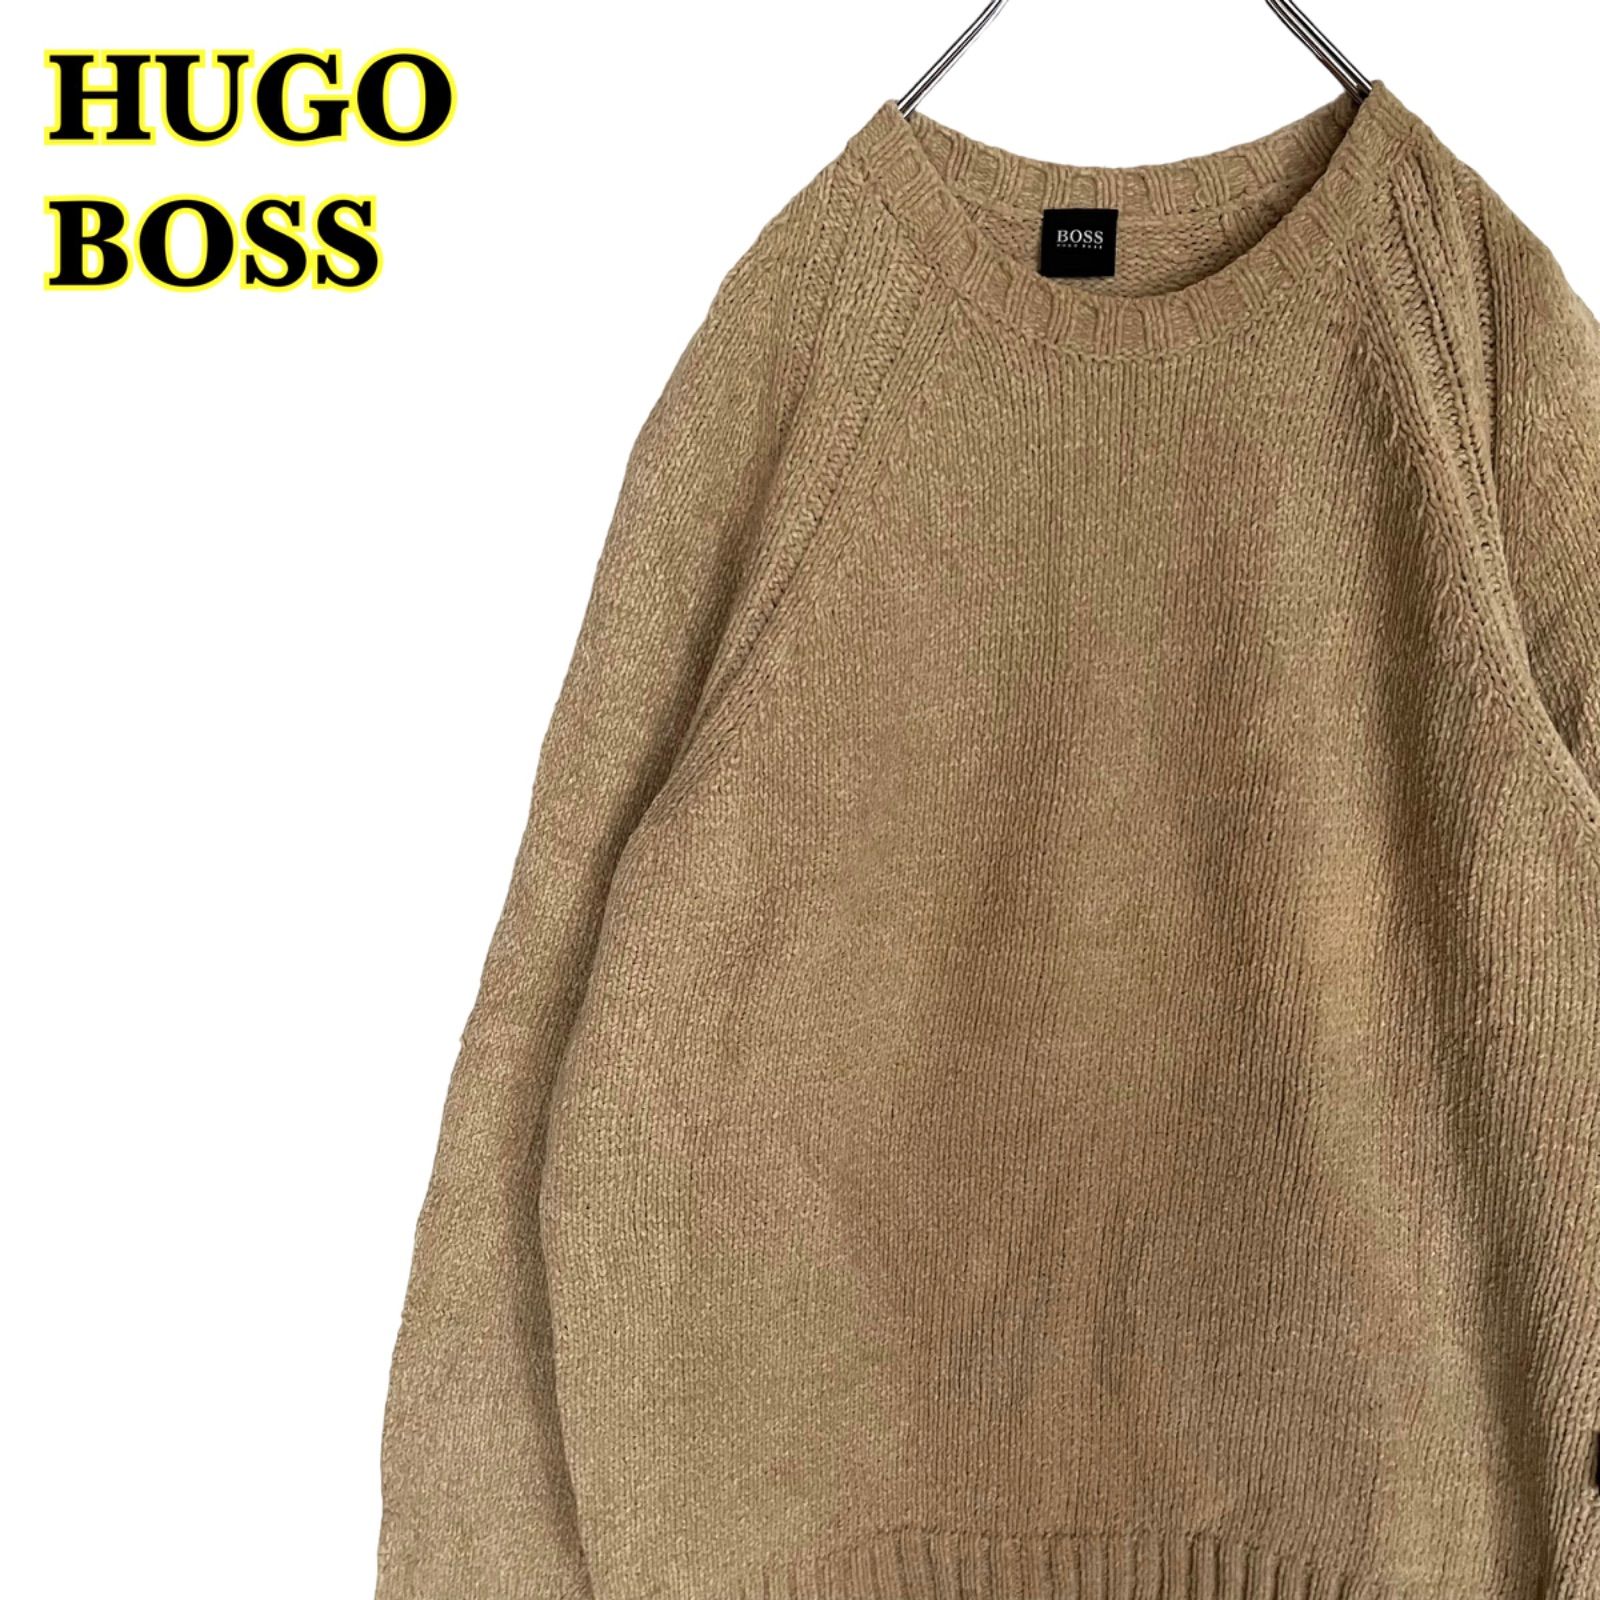 ニット/セーター新品 ヒューゴボス HUGO BOSS セーター ニット 50 イタリア製